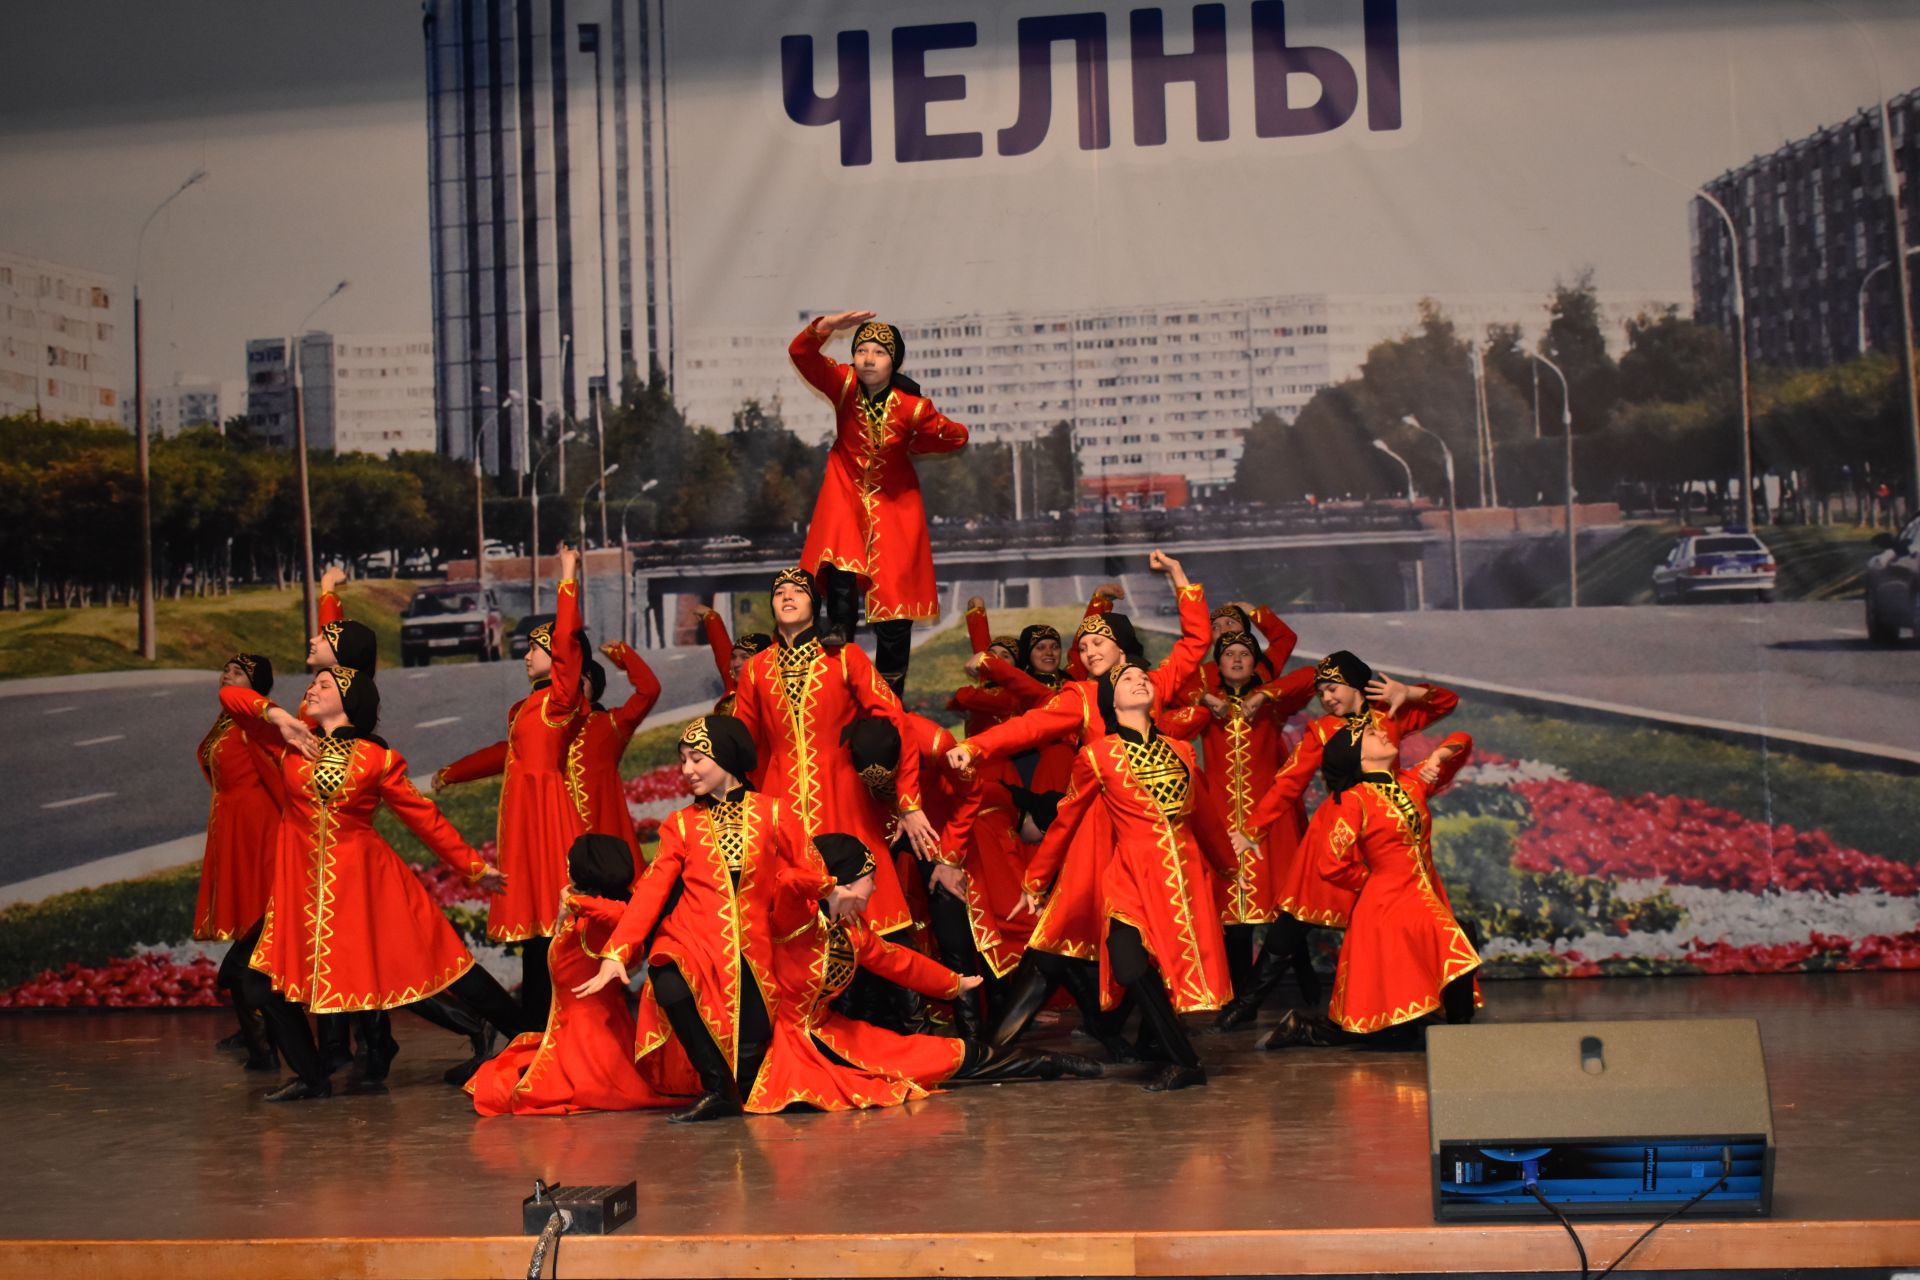 "Бию эчендә" хореография коллективларының республика конкурсы